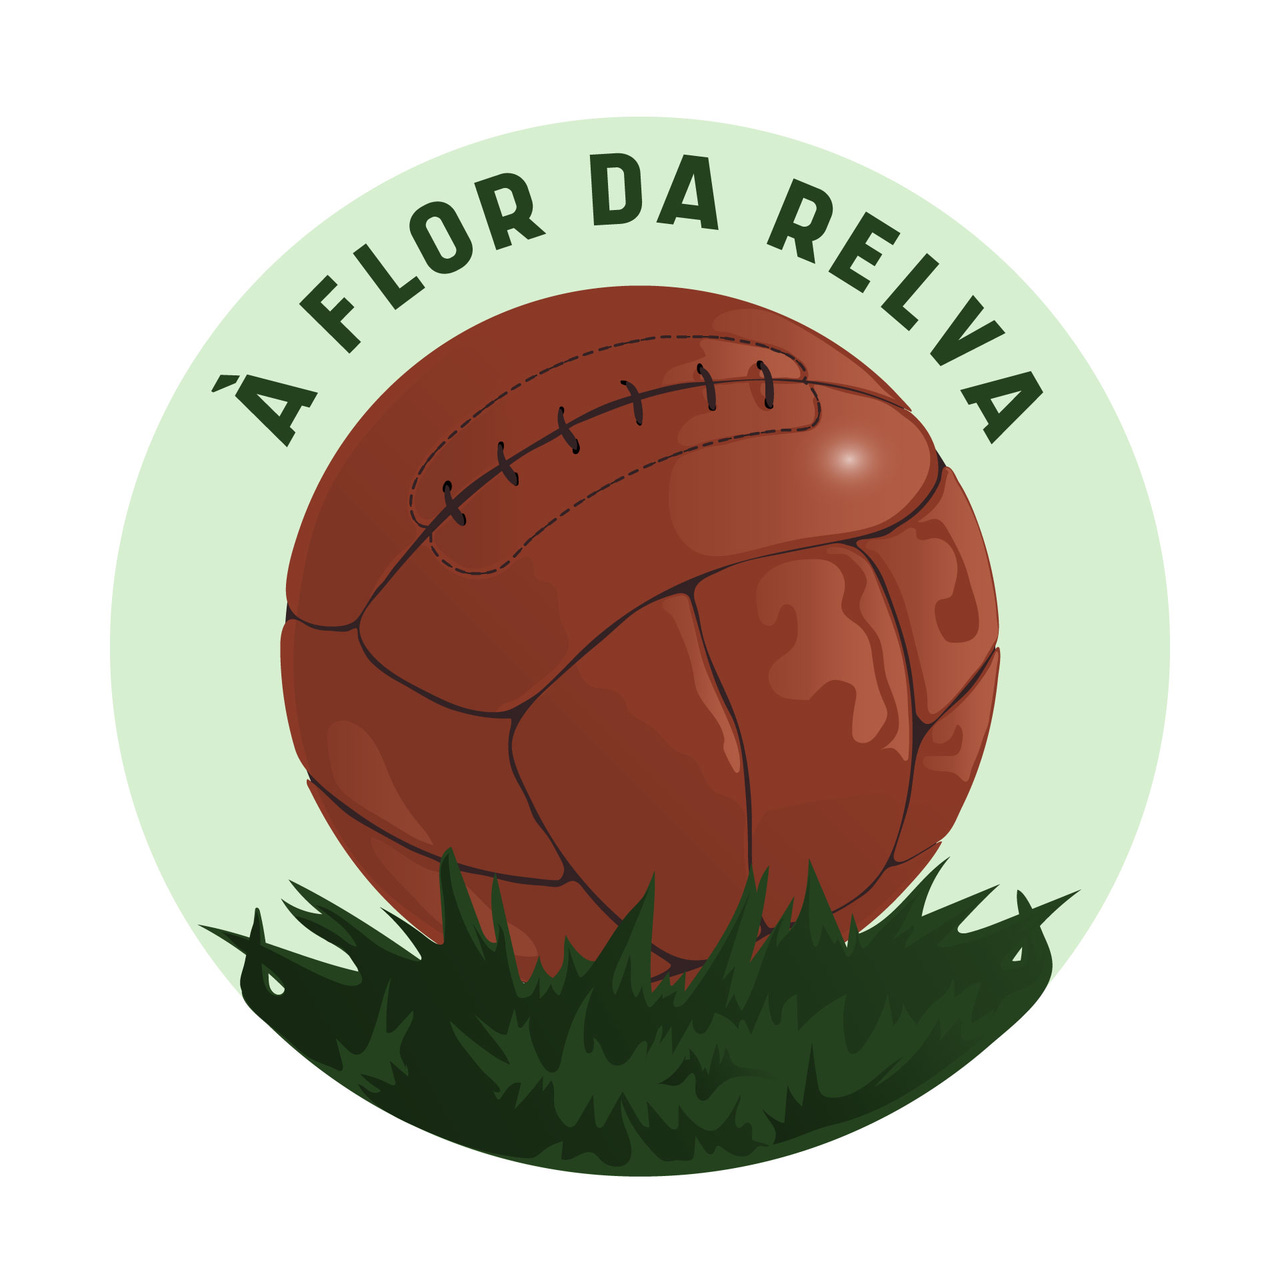 Artwork for À Flor da Relva